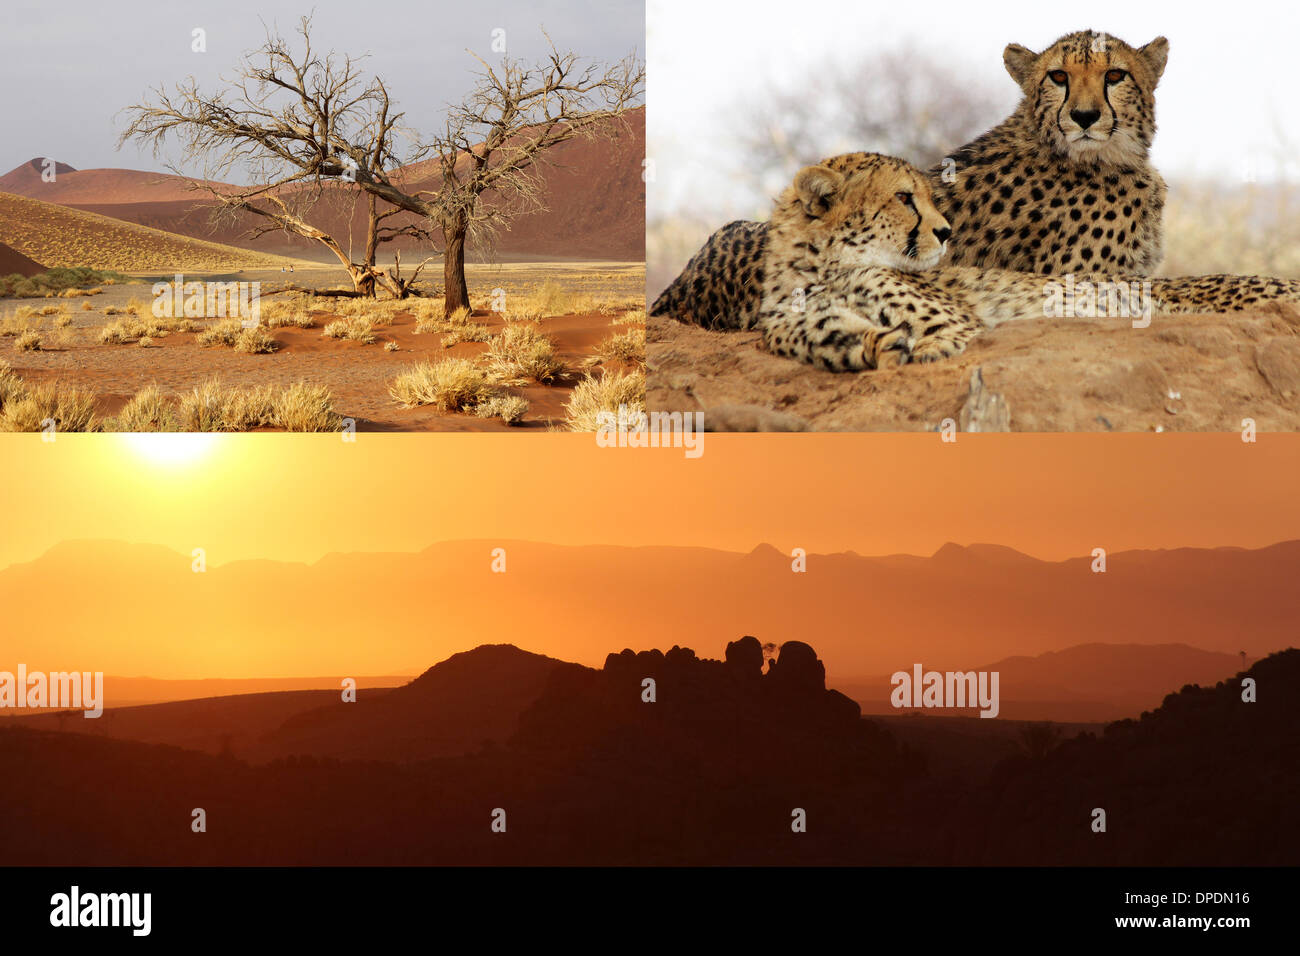 Composé de trois images de Namibie, montrant les guépards, dunes de sable et un merveilleux coucher du soleil orange avec des pierres au premier plan. Banque D'Images